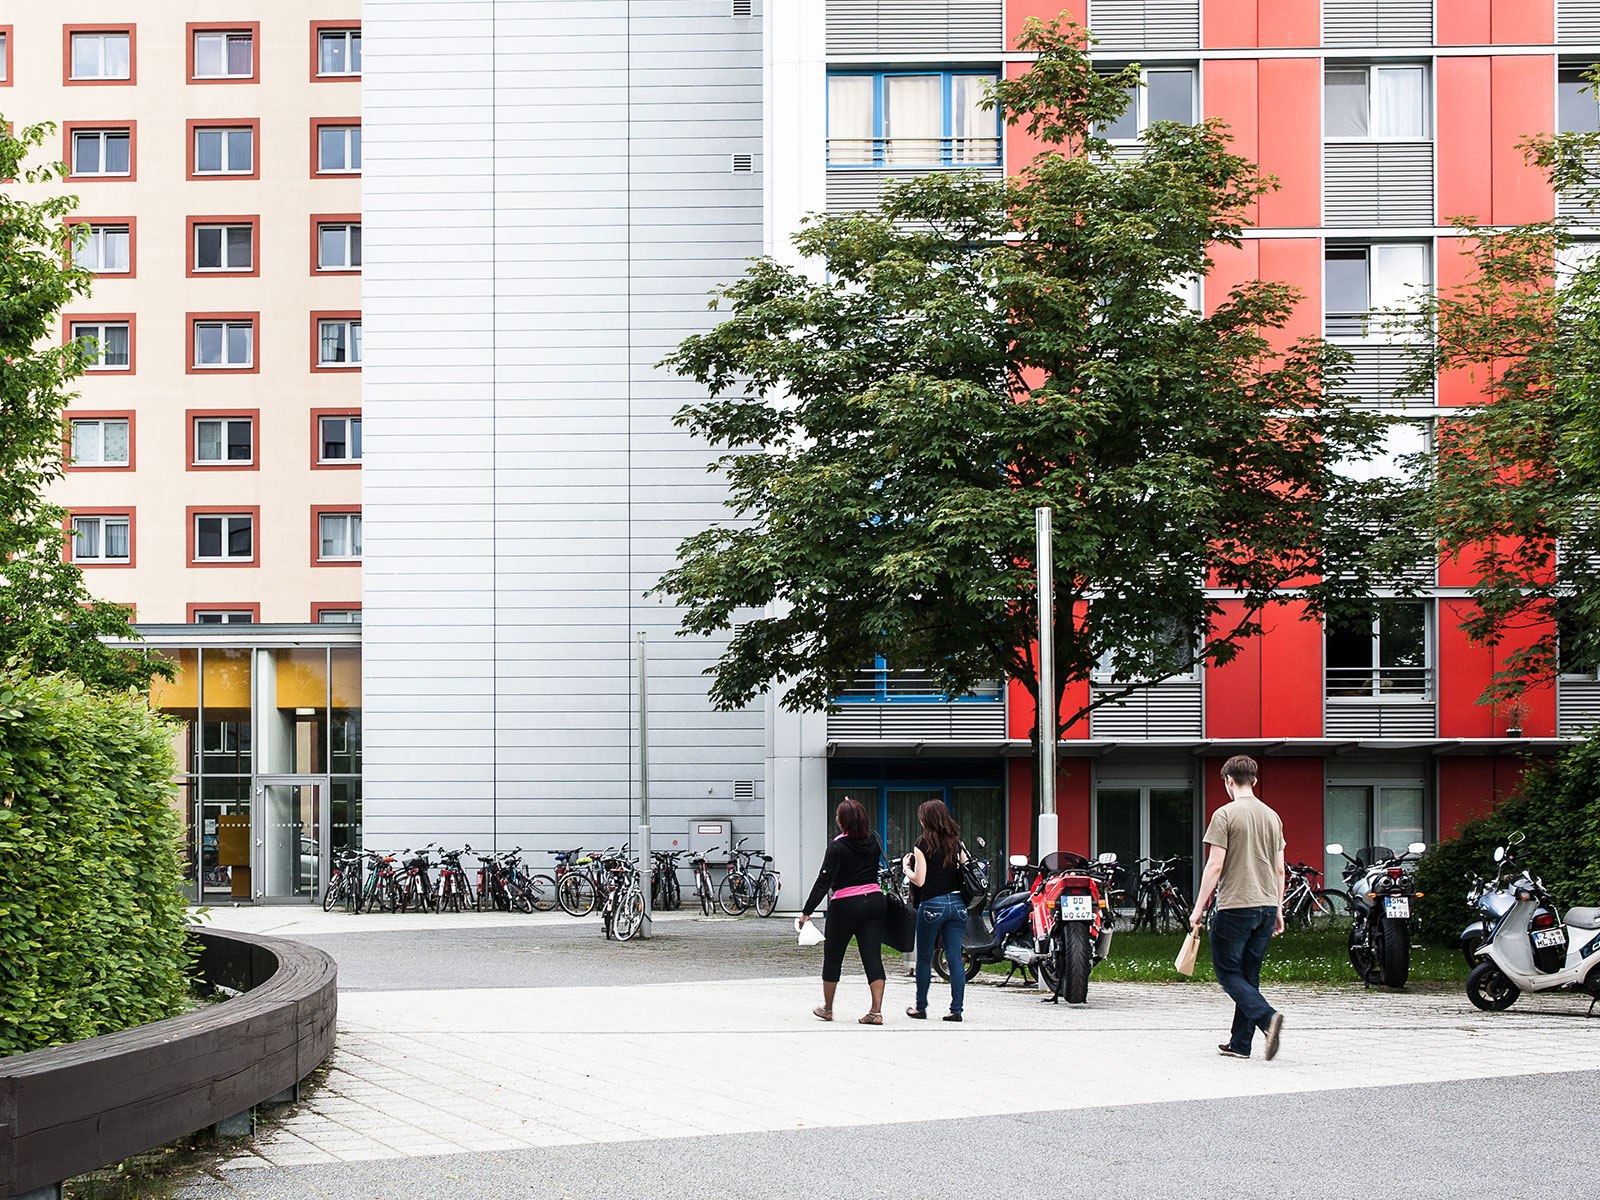 Einige Studenten laufen auf den Eingang des Wohnheims Wundtstraße 7 zu. Vor dem Wohnheim parken einige Mopeds und viele Fahrräder sind abgestellt. Ein dicht belaubter Baum ragt ins Bild hinein.